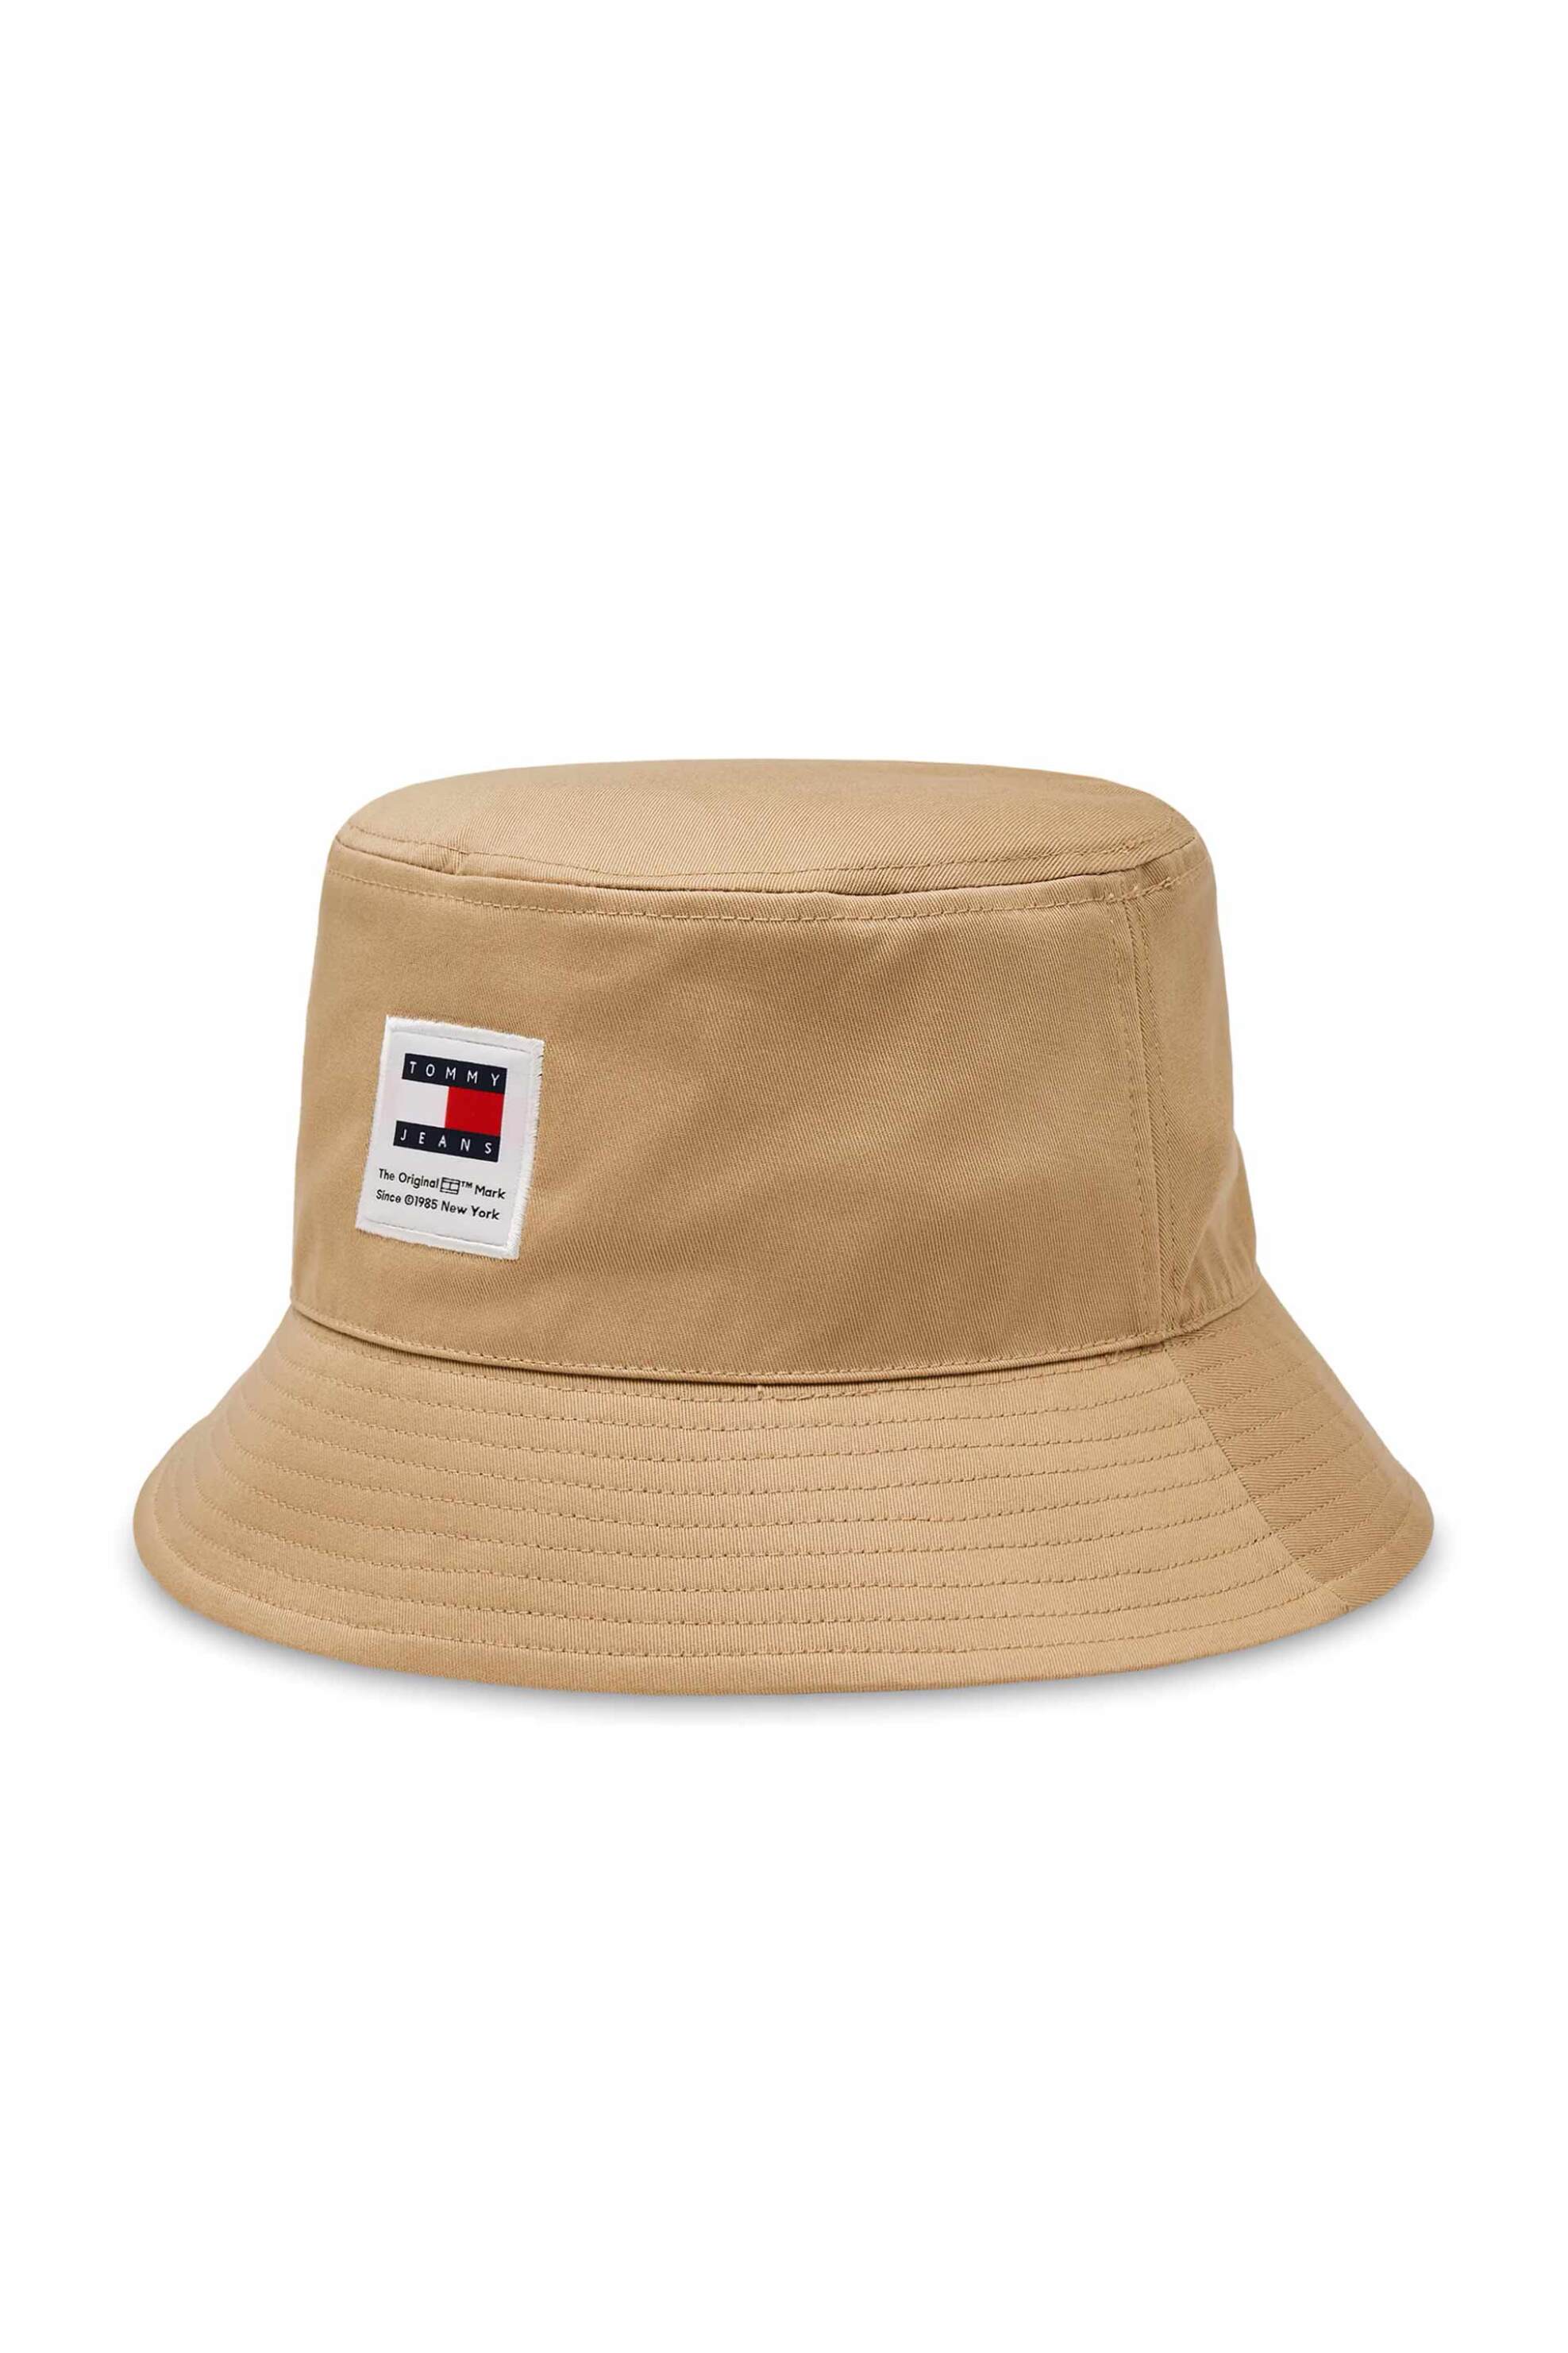 Ανδρική Μόδα > Ανδρικά Αξεσουάρ > Ανδρικά Καπέλα & Σκούφοι Tommy Jeans ανδρικό bucket καπέλο με λογότυπο - AM0AM12018 Μπεζ